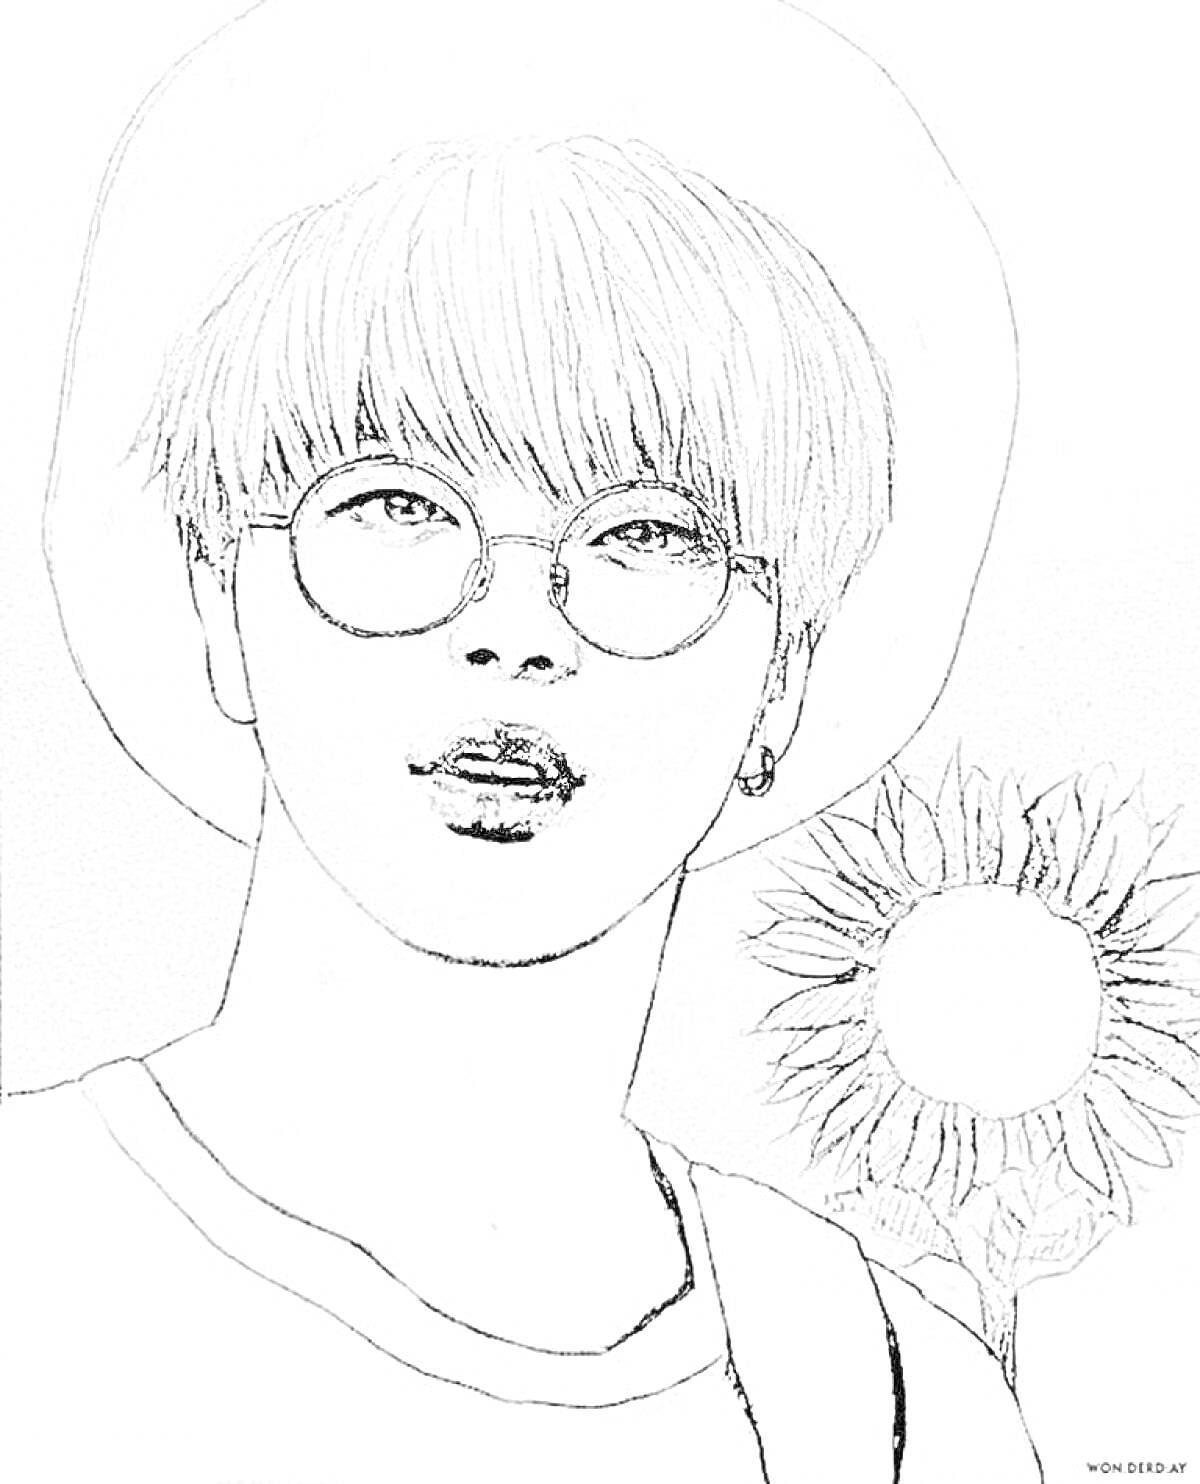 Портрет участника BTS в очках и шляпе с подсолнухом на фоне